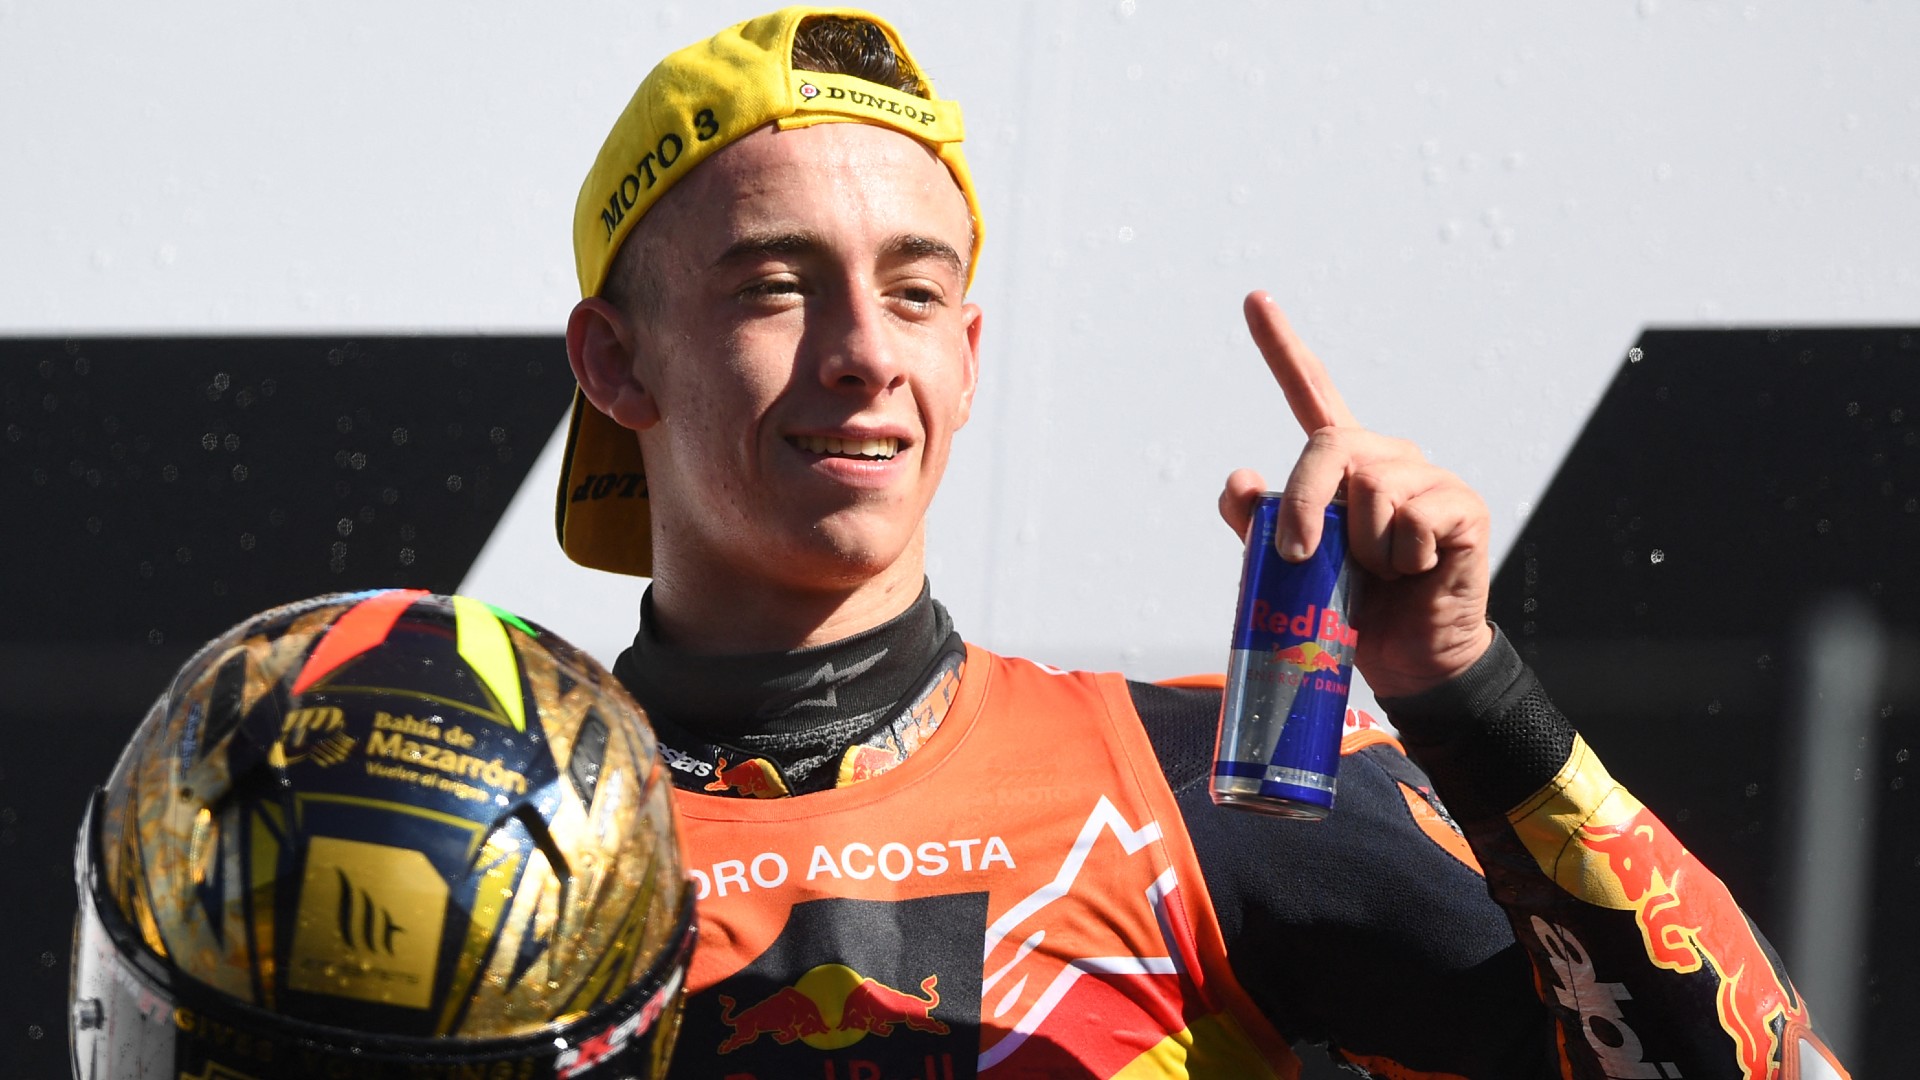 Drámai utolsó kör után a 17 éves újonc lett a Moto3 világbajnoka